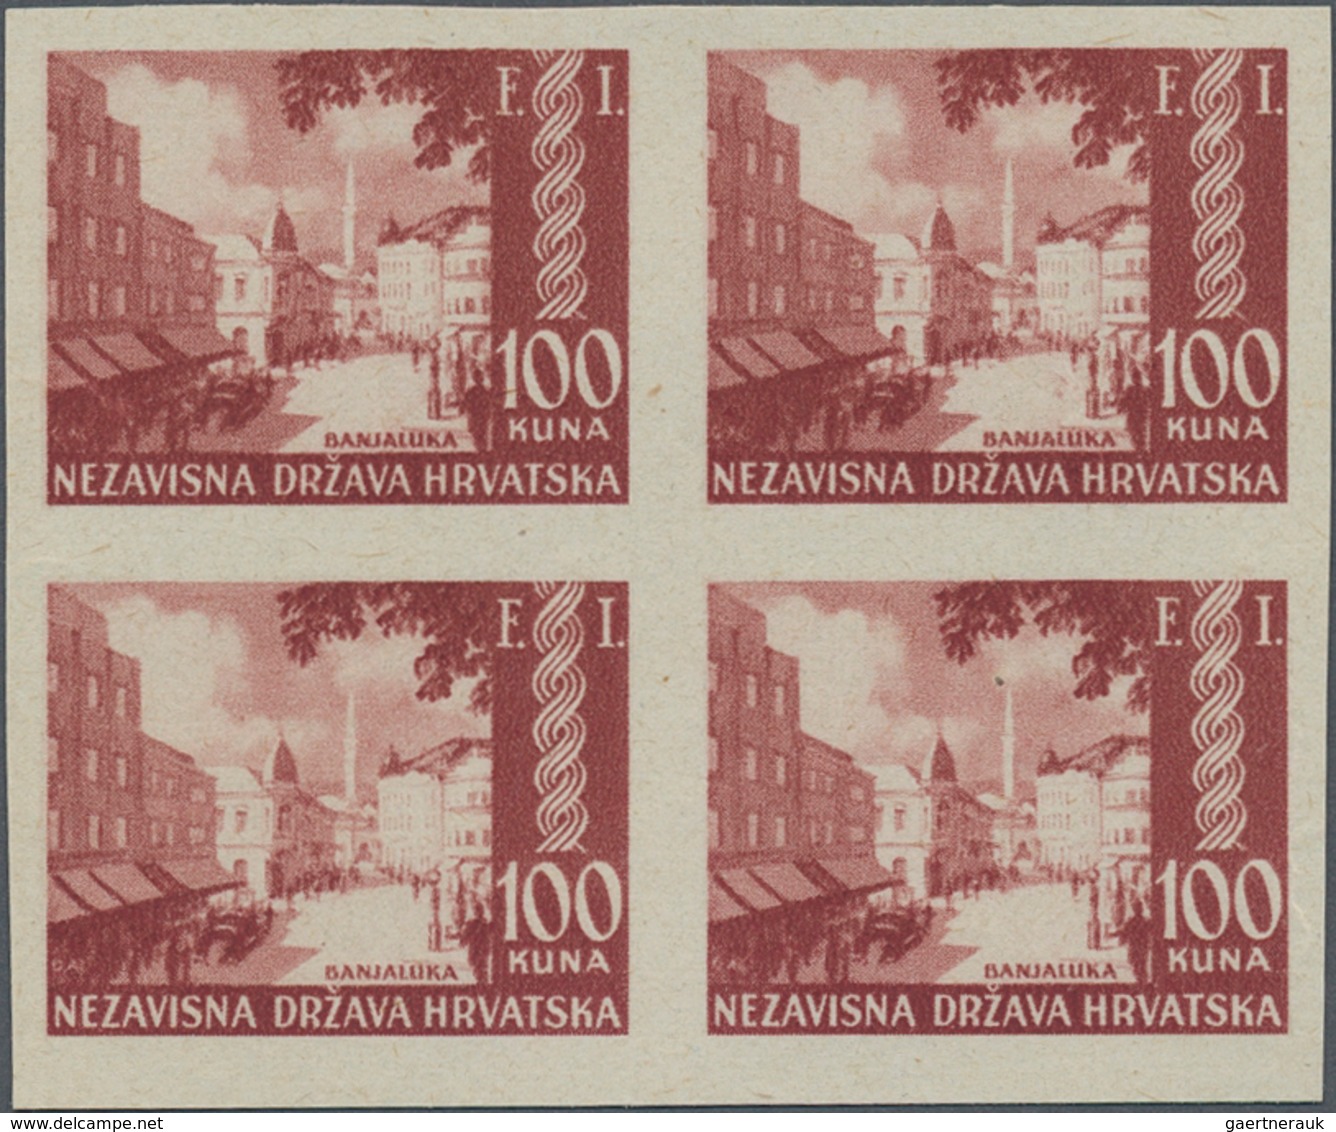 Kroatien: 1942, Independence/Philatelic Exhibition/Overprints, Specialised Assortment Of Apprx. 67 S - Kroatien